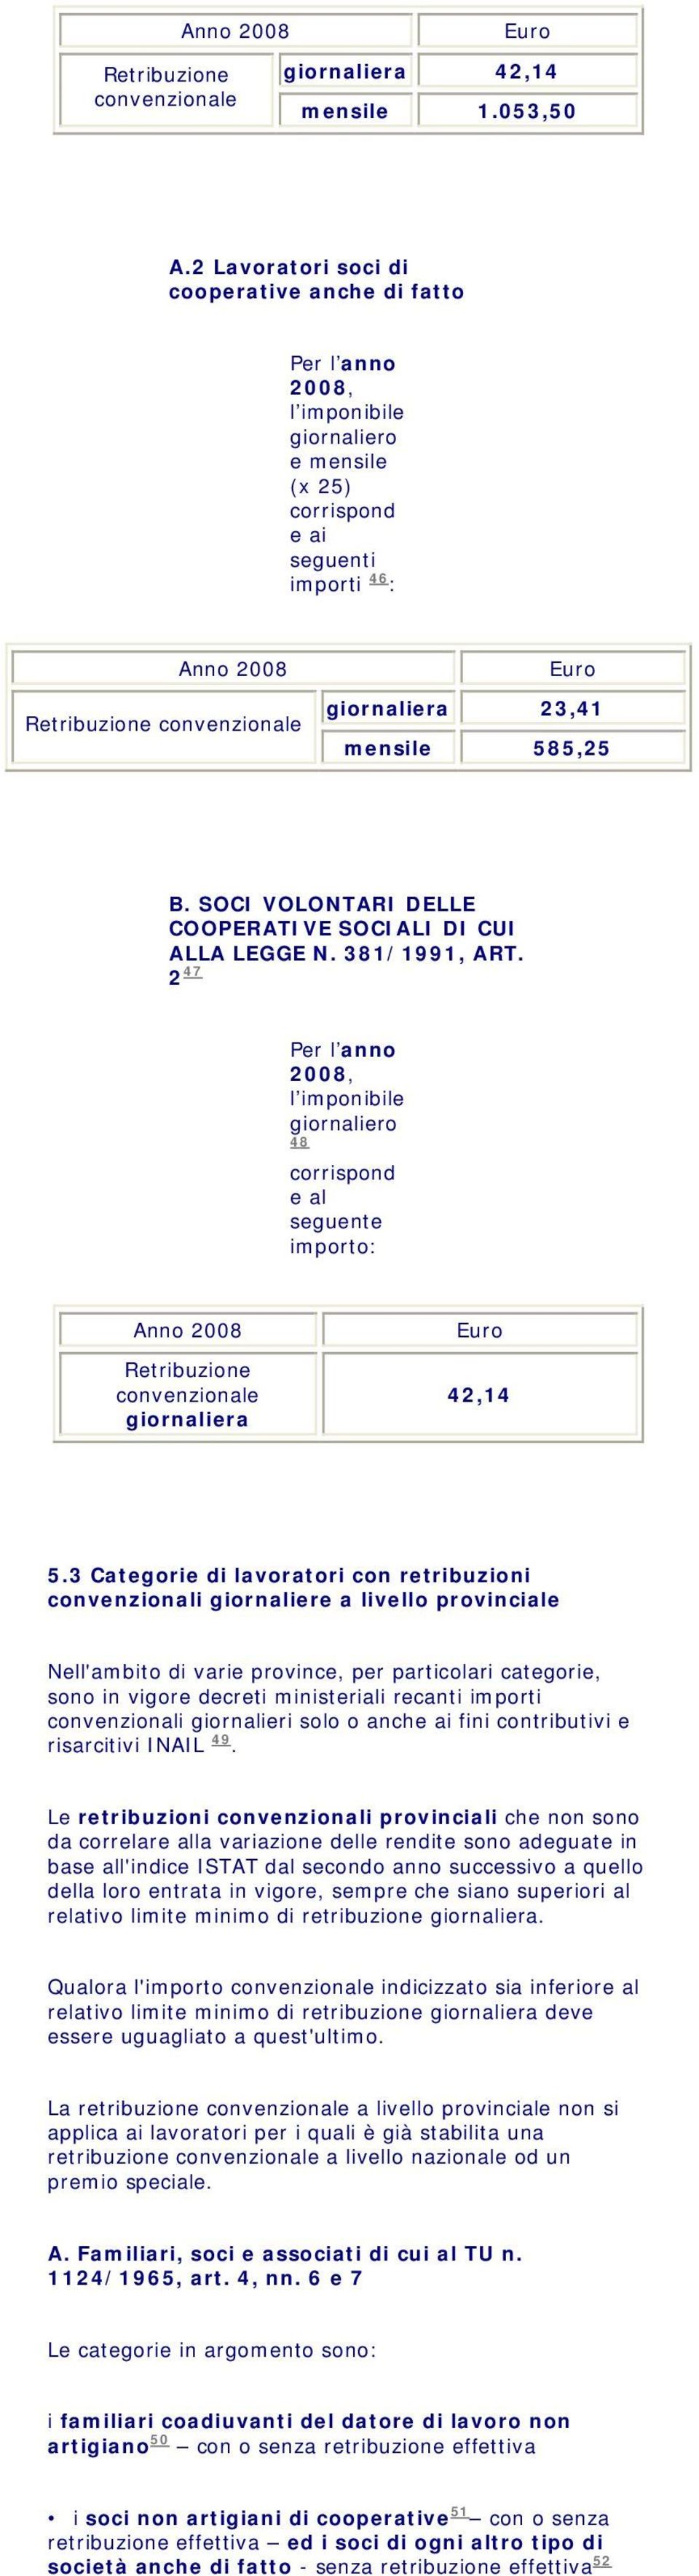 mensile 585,25 B. SOCI VOLONTARI DELLE COOPERATIVE SOCIALI DI CUI ALLA LEGGE N. 381/1991, ART.